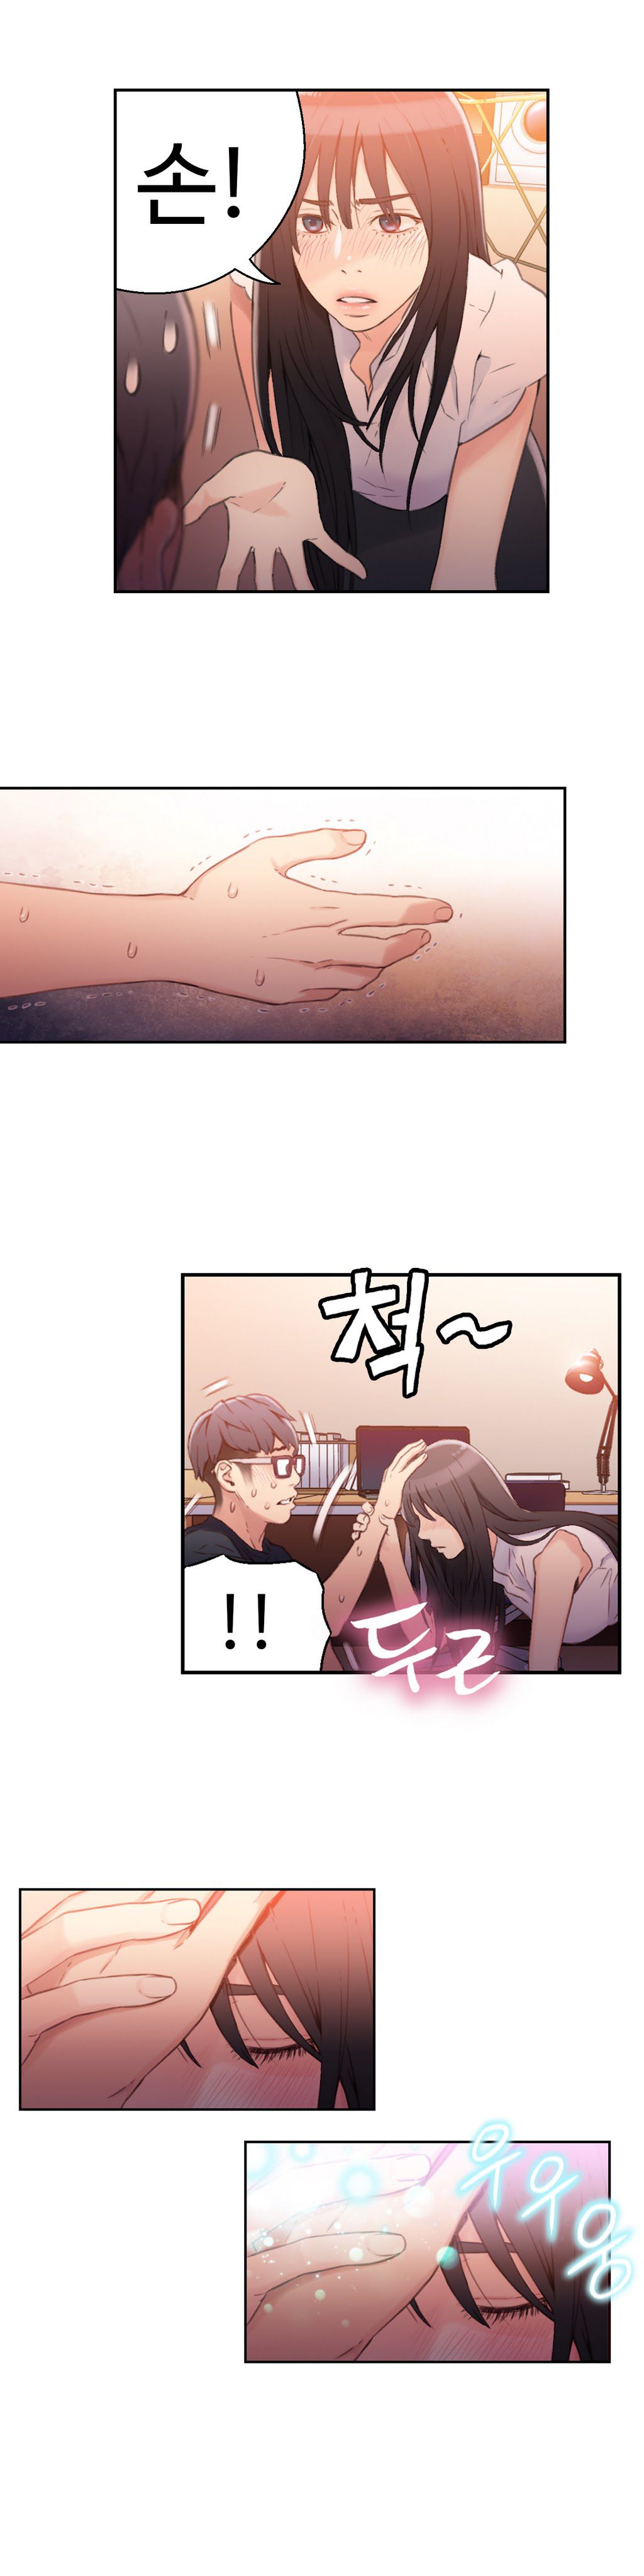 Sweet Guy Chapter 18 [Korean] (Full Color) Lezhin Comics 2wonsik2 15